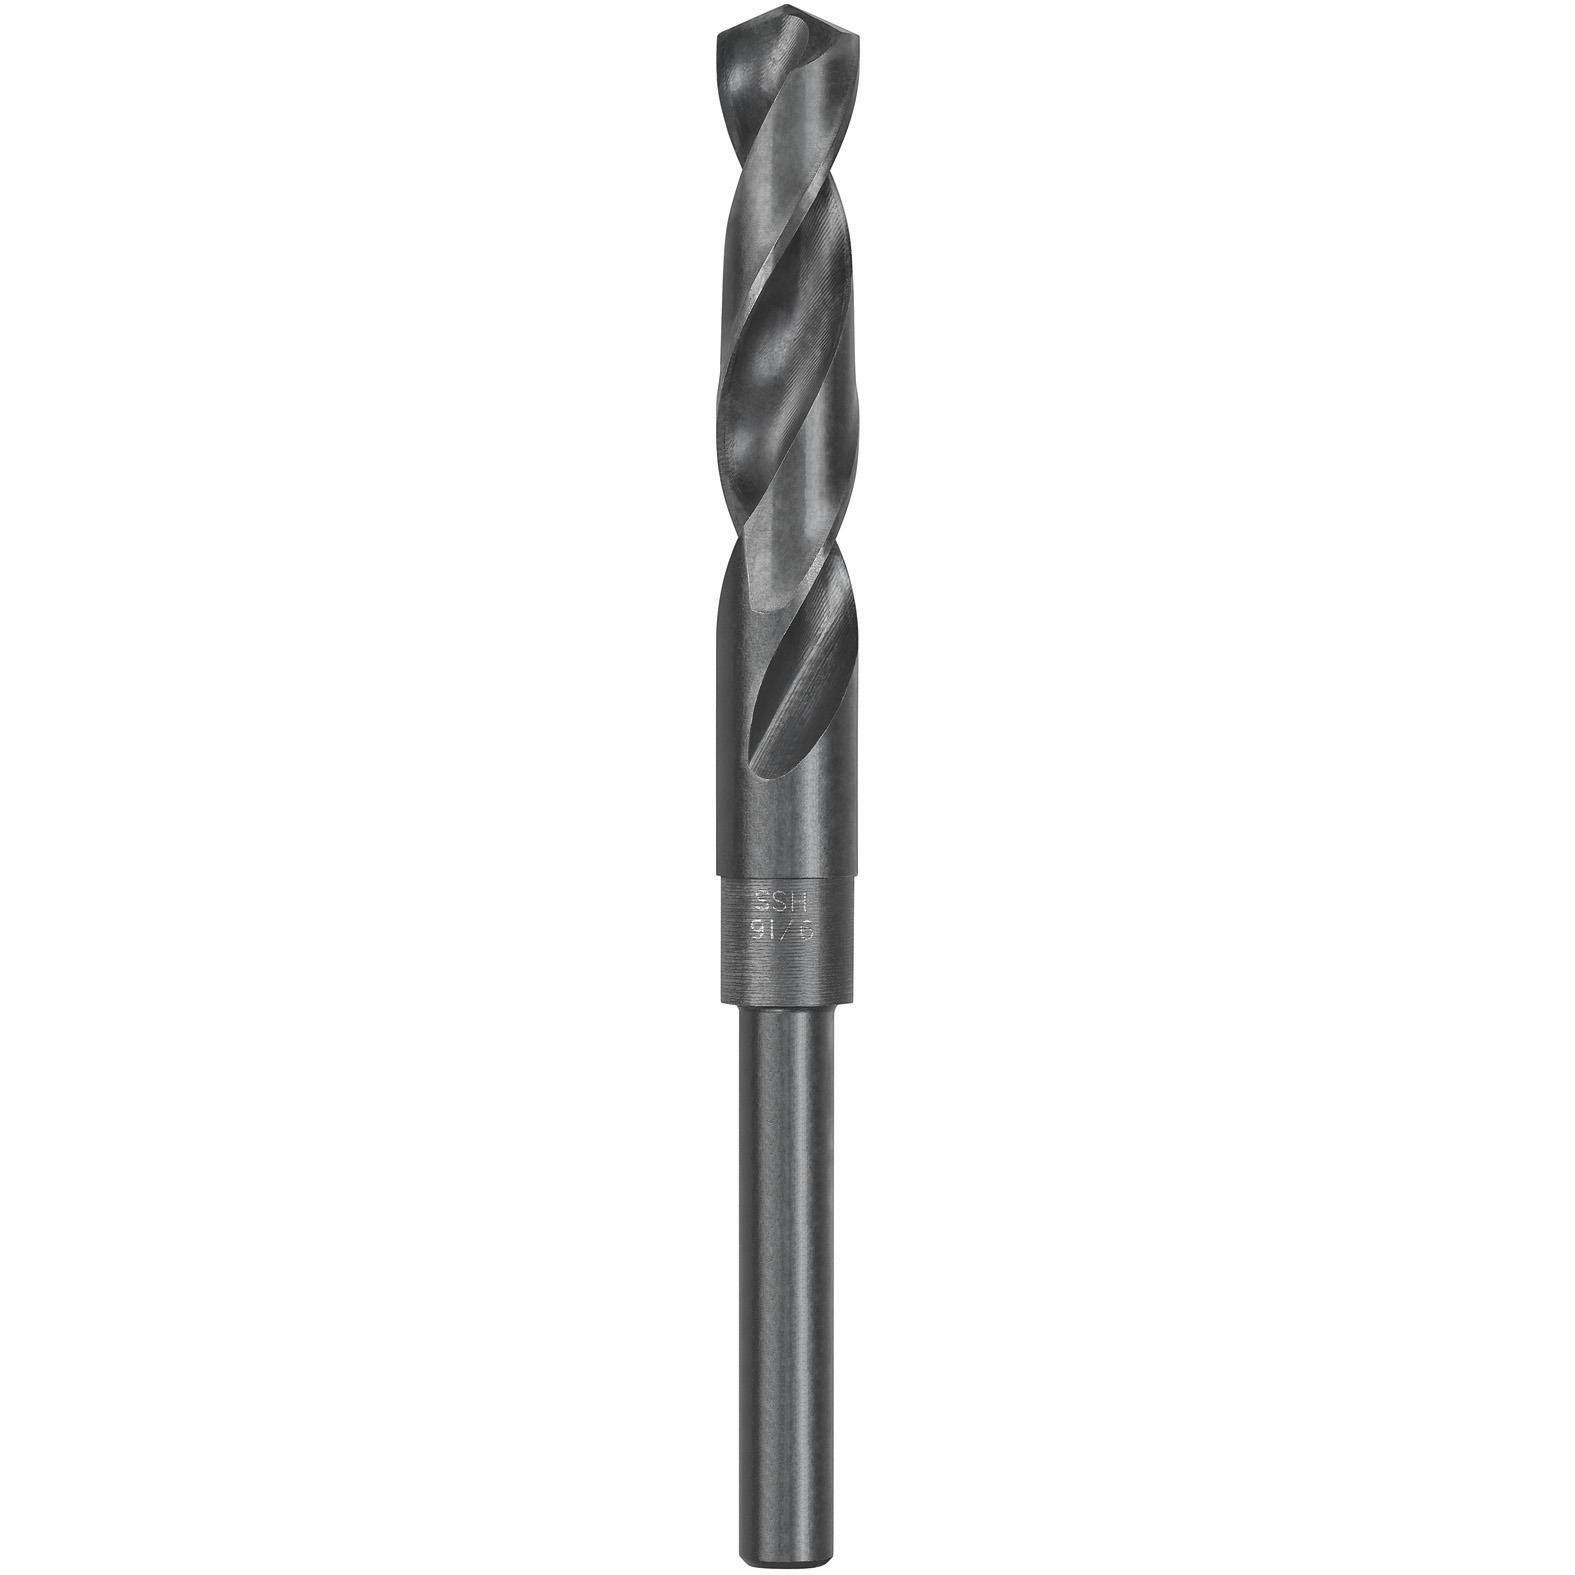 Dewalt Drill Bit - Black Oxide, 15.3mm